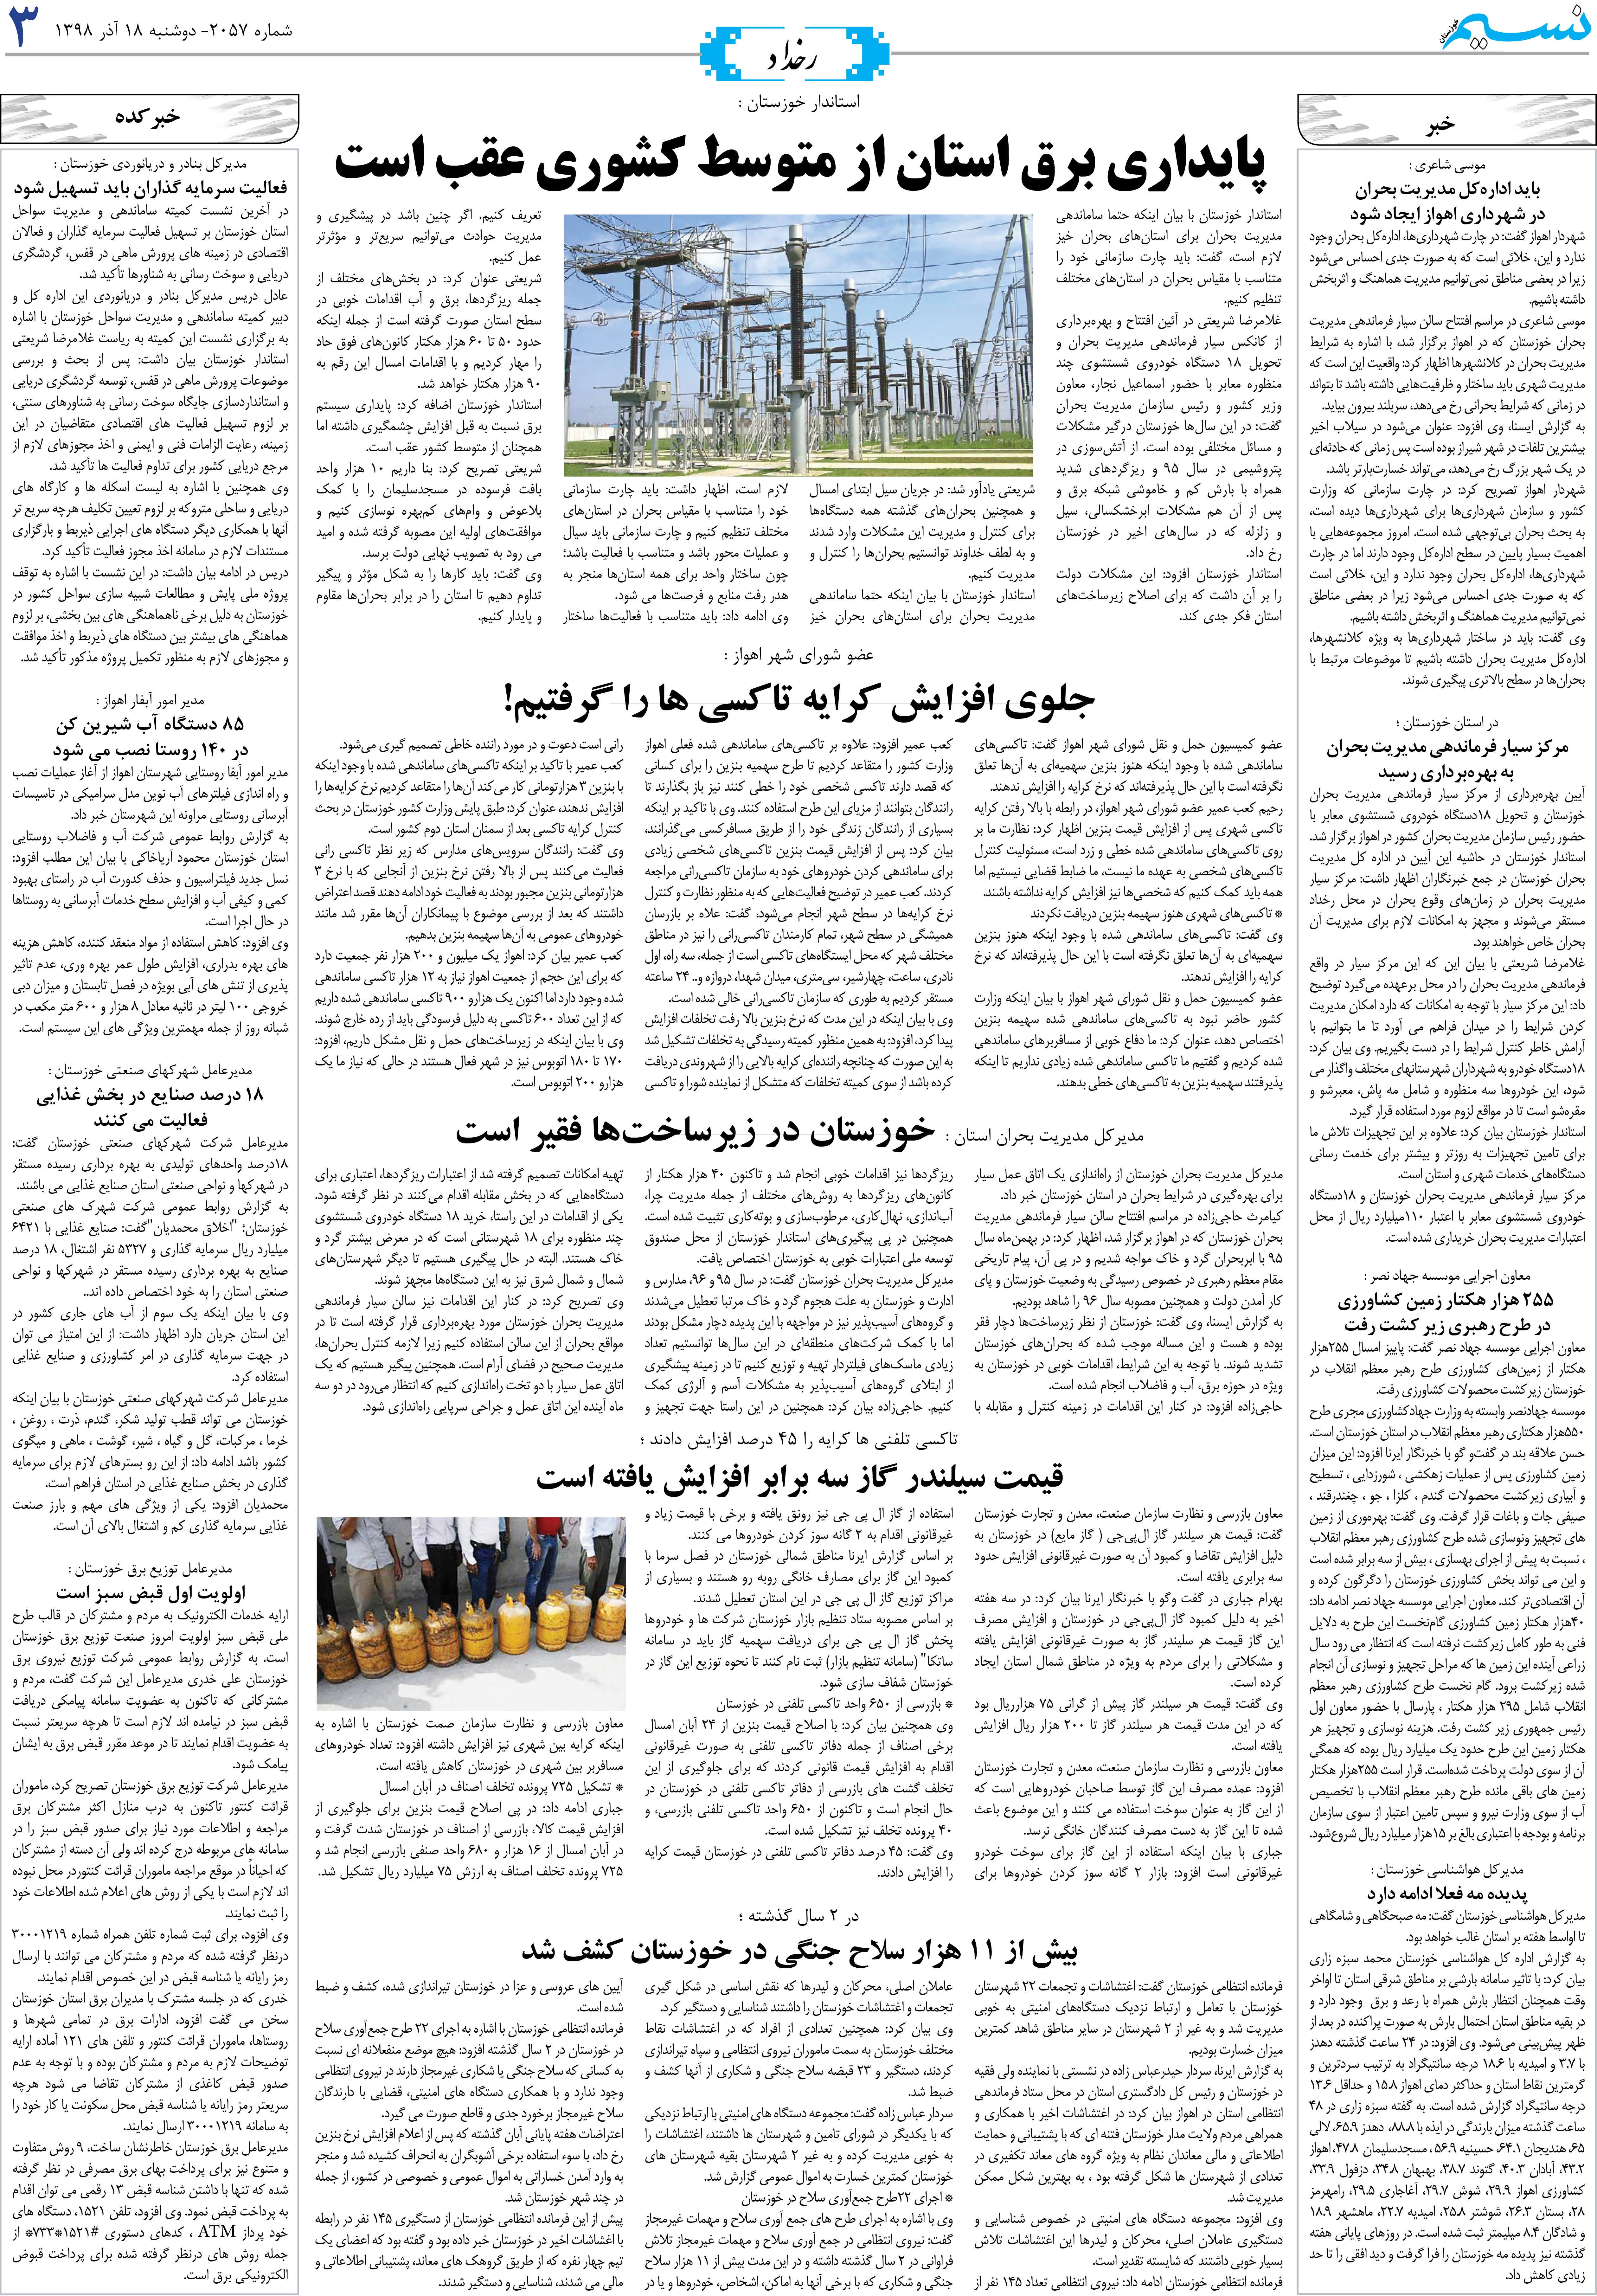 صفحه رخداد روزنامه نسیم شماره 2057